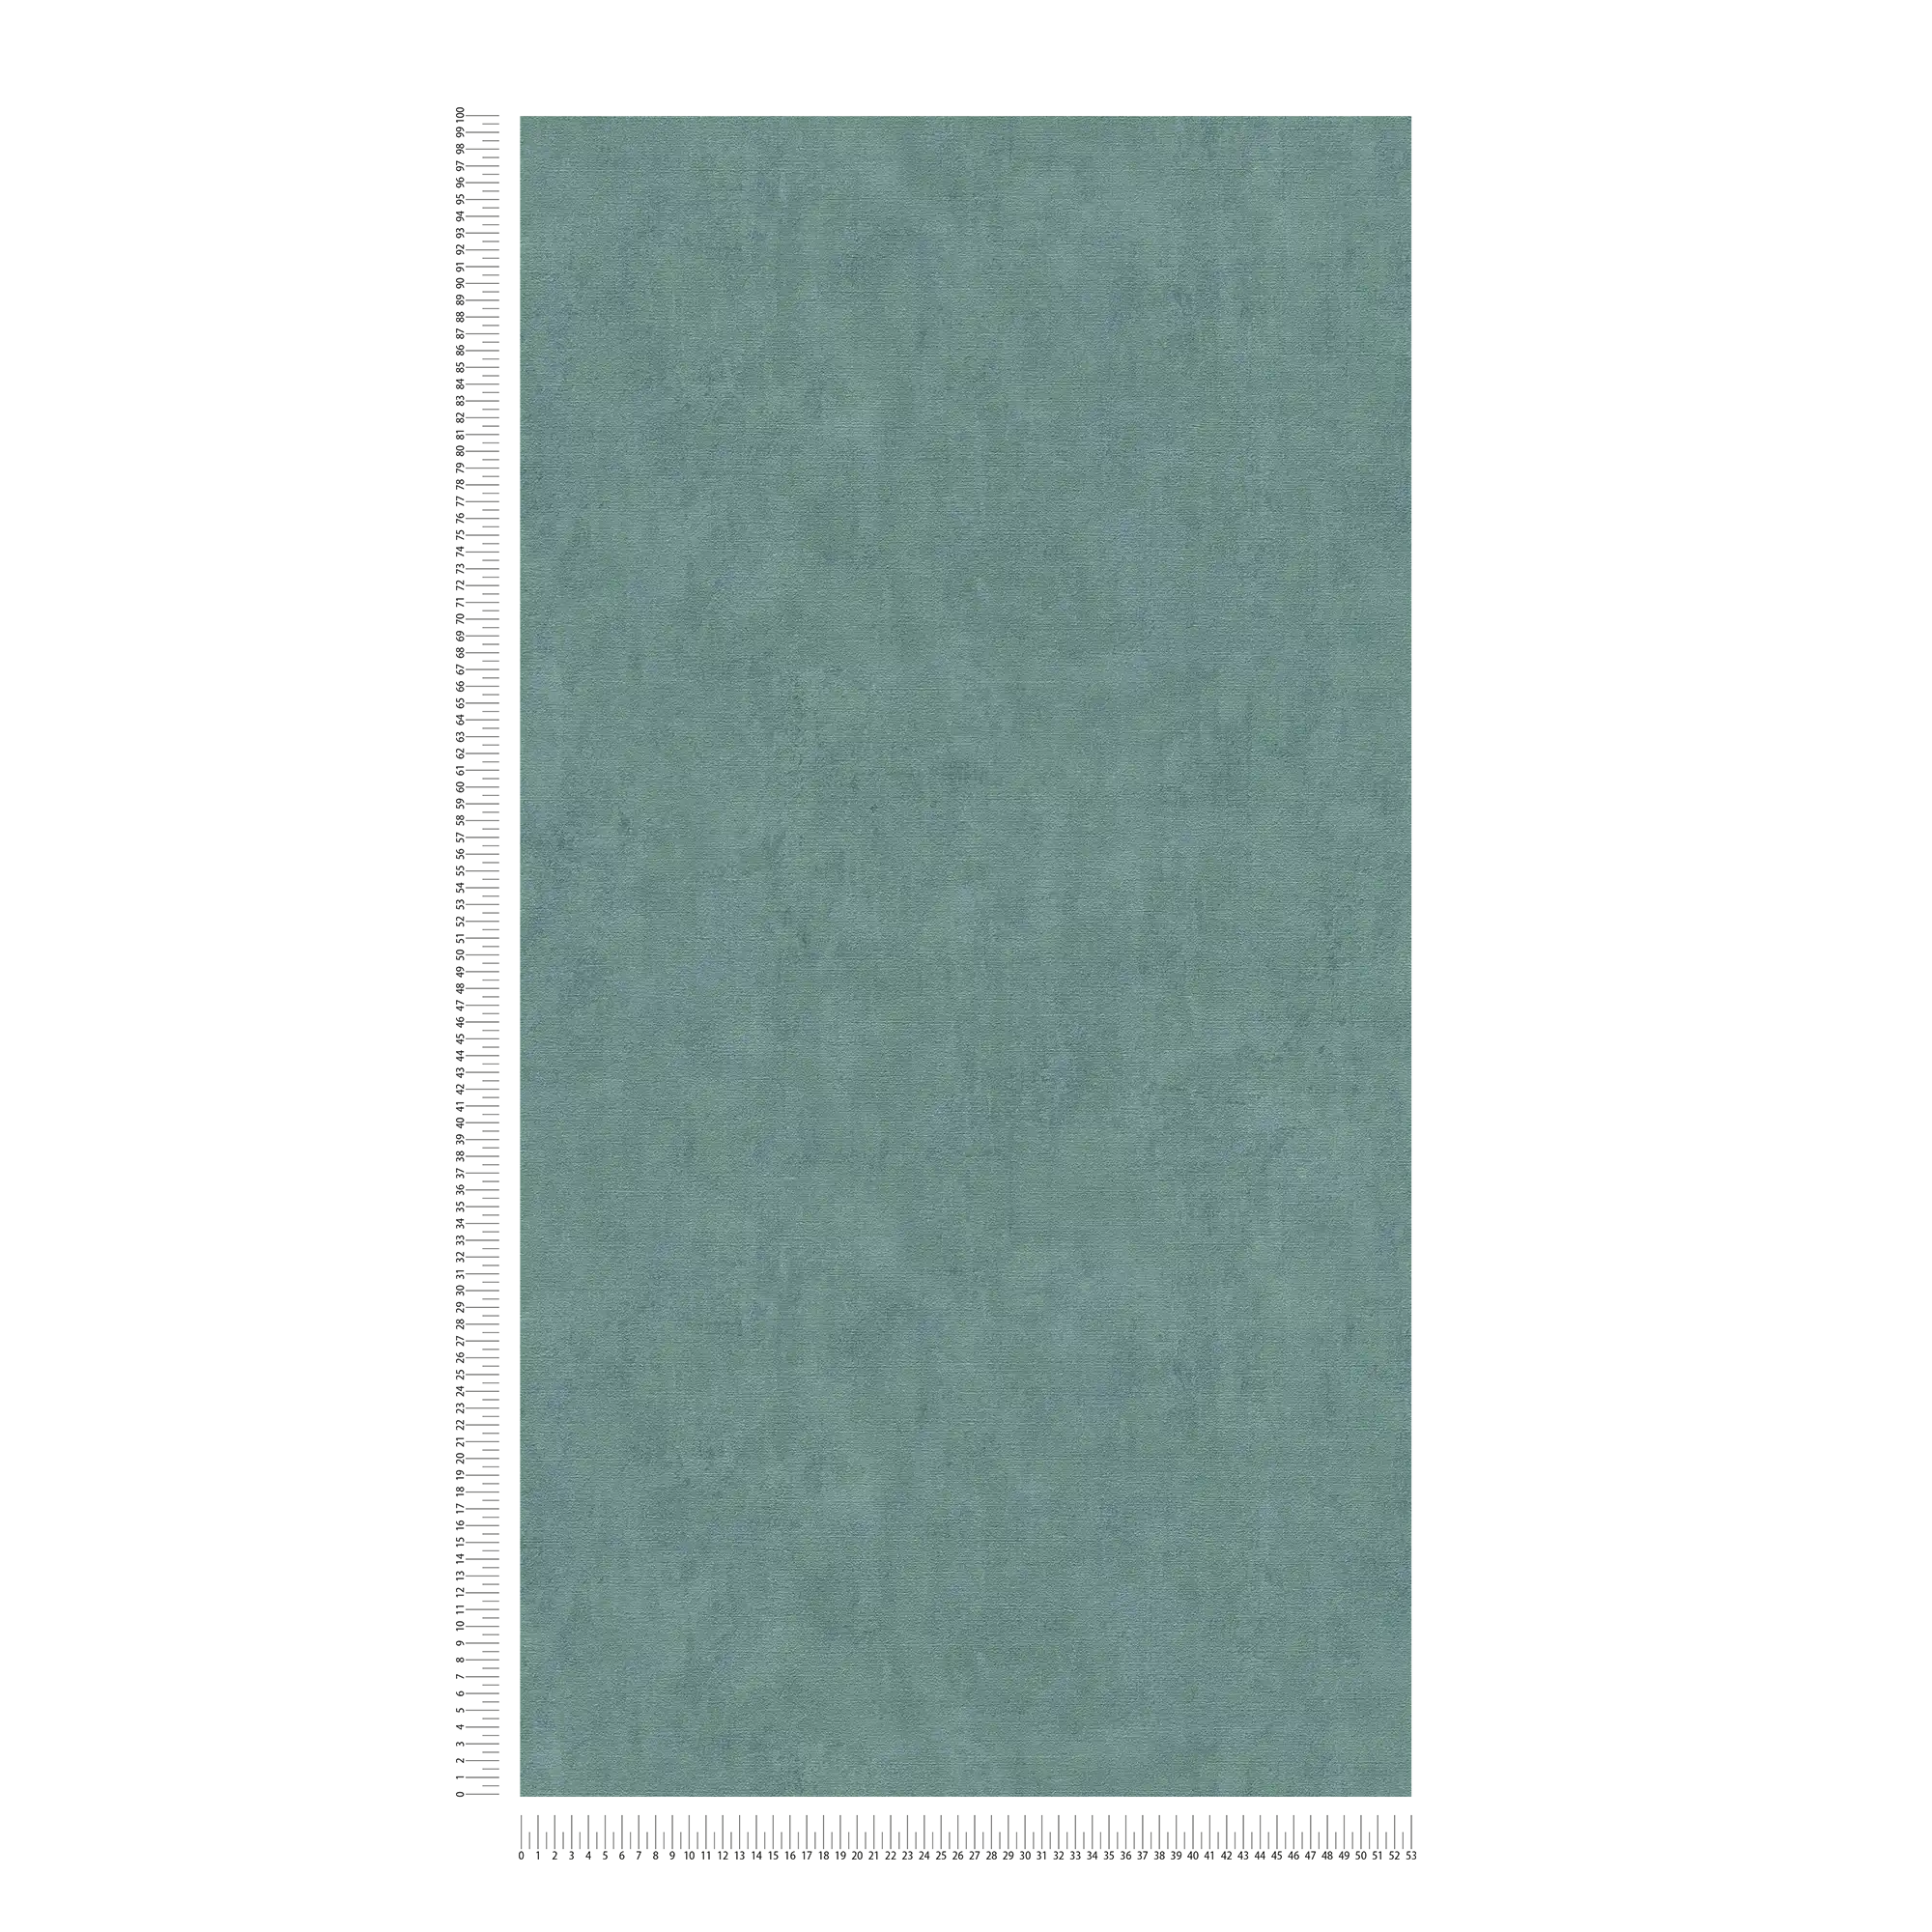             Carta da parati a tinta unita con accenti verdi screziati - Blu, Verde
        